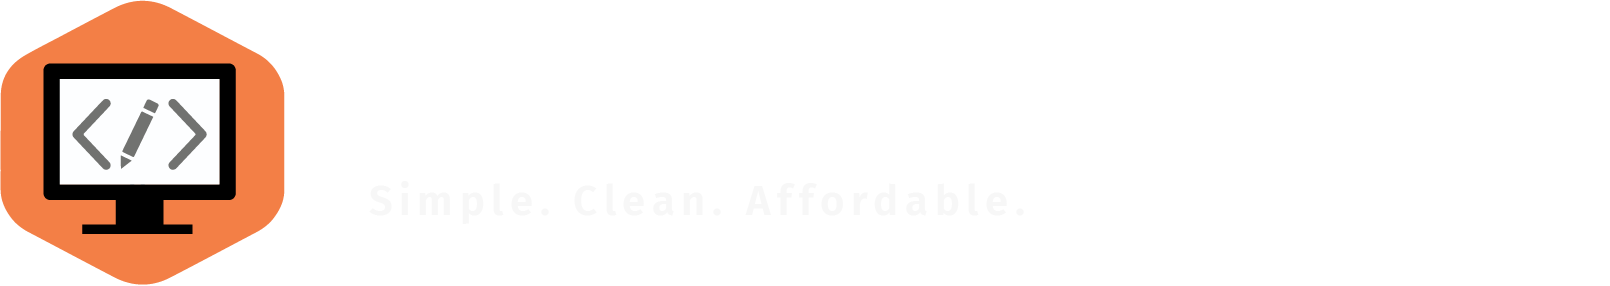 Clear Vision Websites Logo